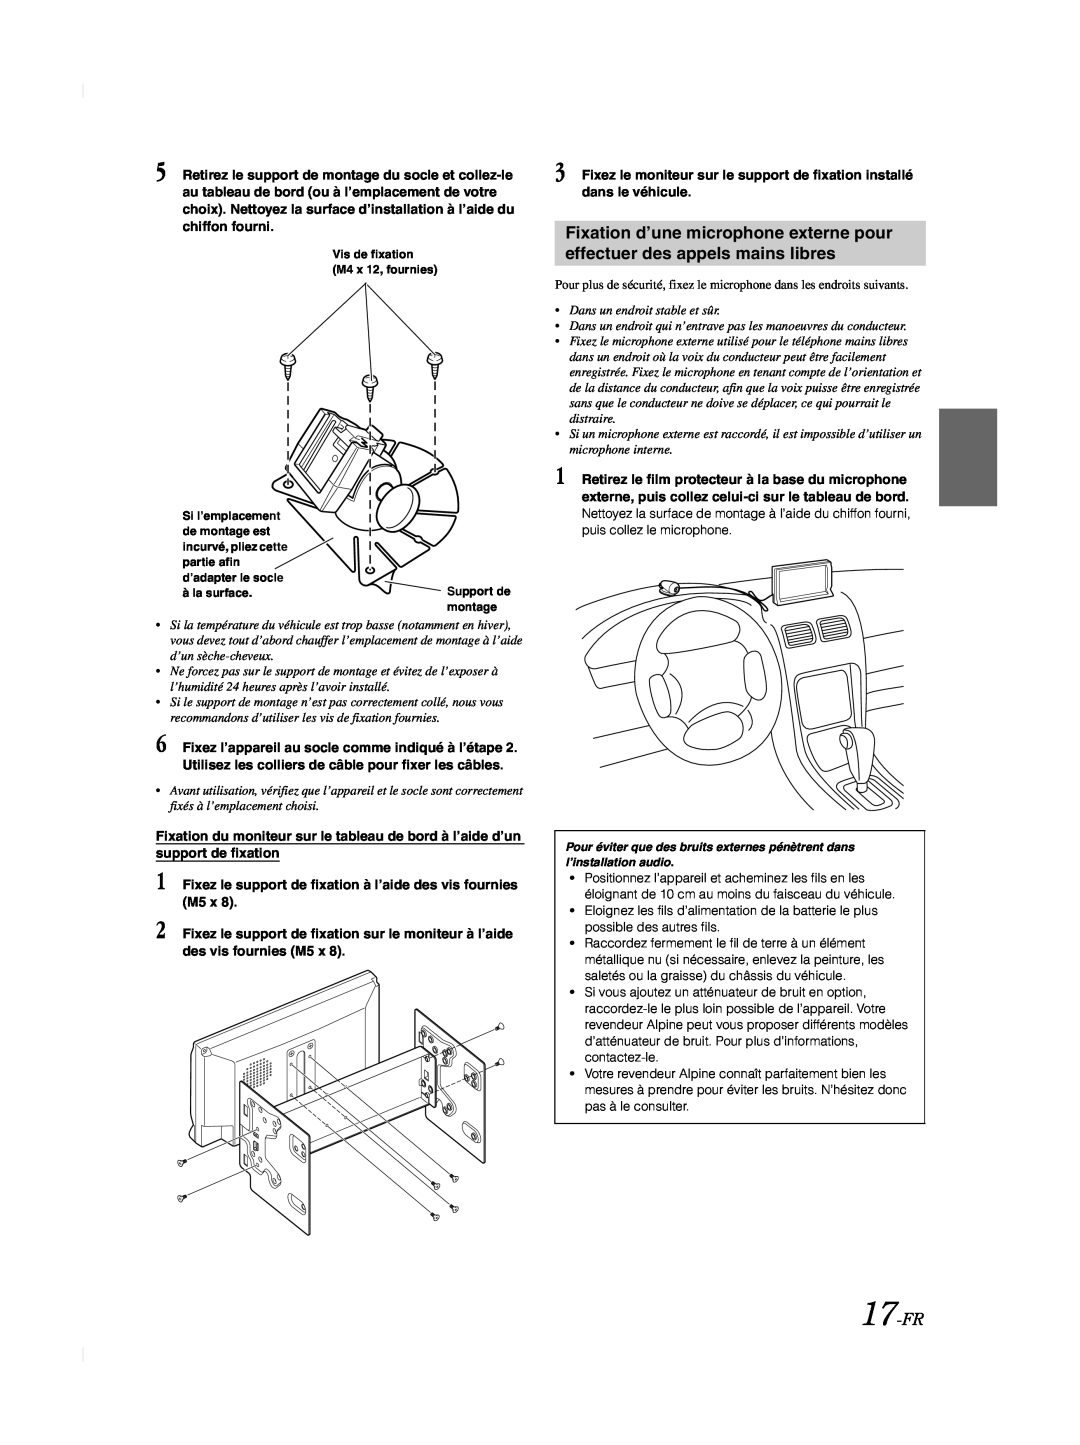 Alpine TME-M740BT owner manual 17-FR, Fixez le support de fixation à l’aide des vis fournies M5 x 